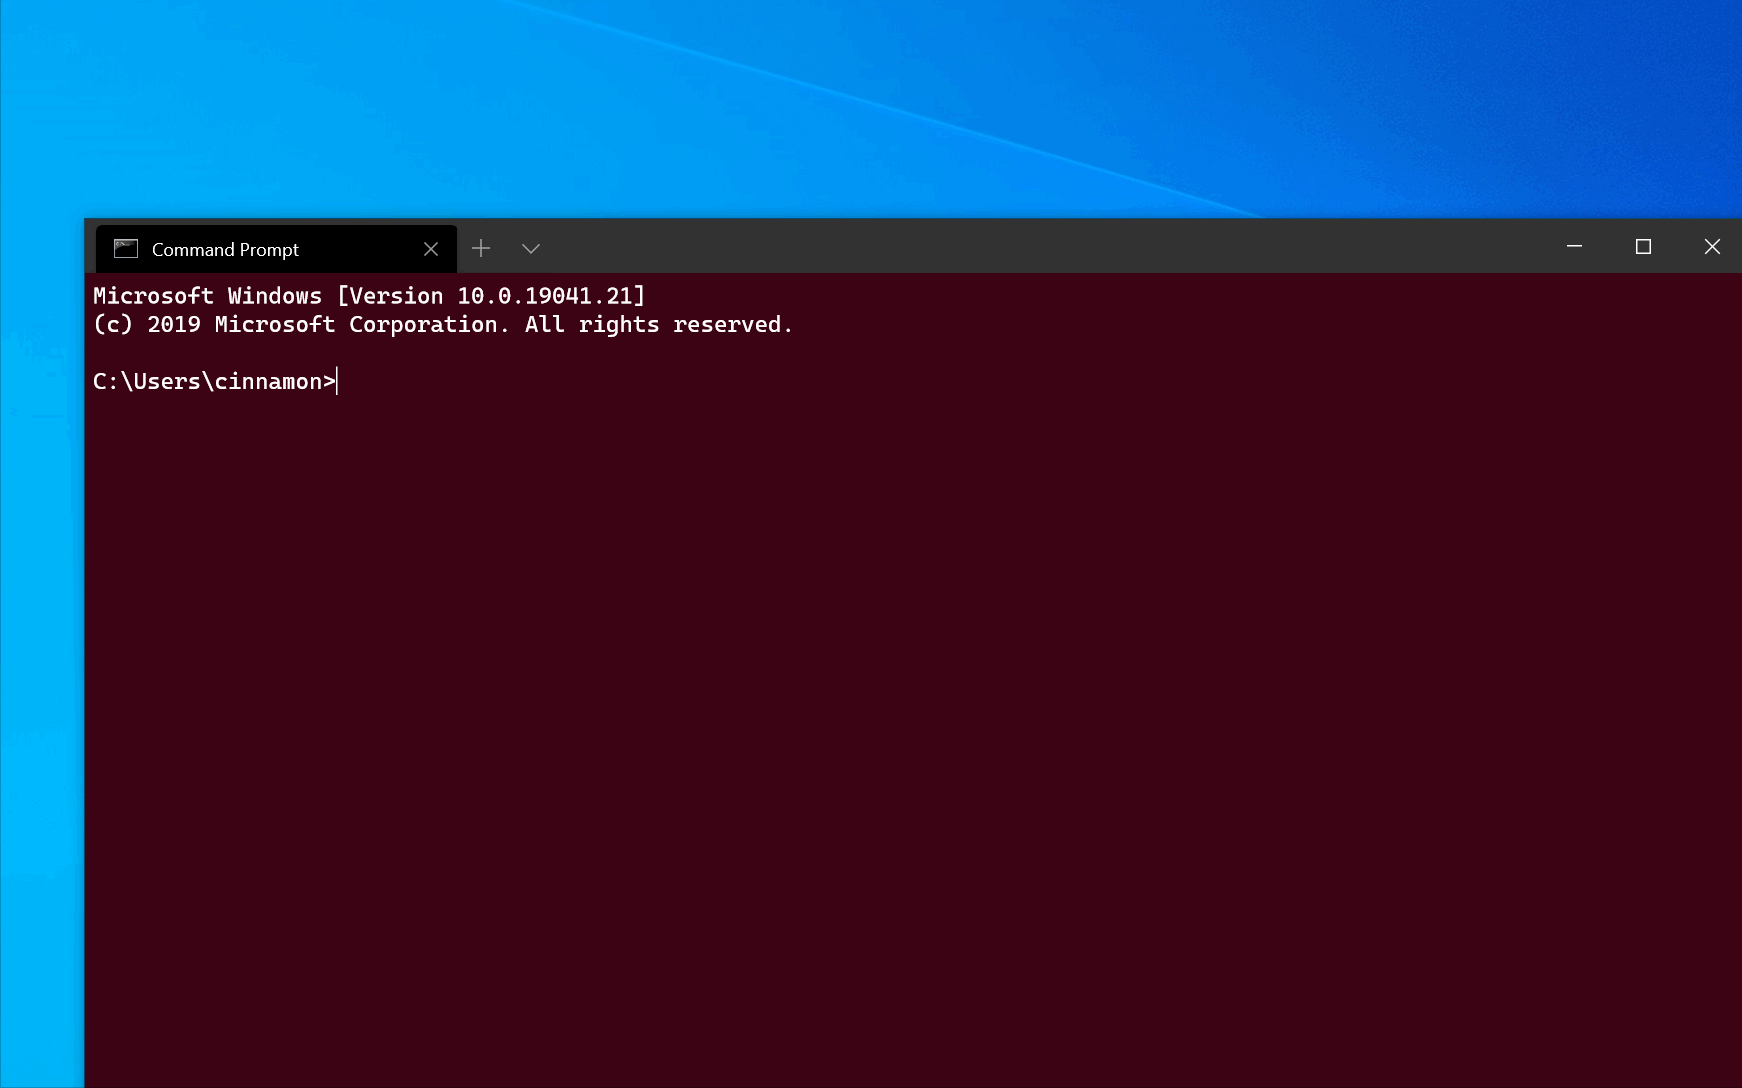 CMD executando sozinho no Windows 10 - Microsoft Community